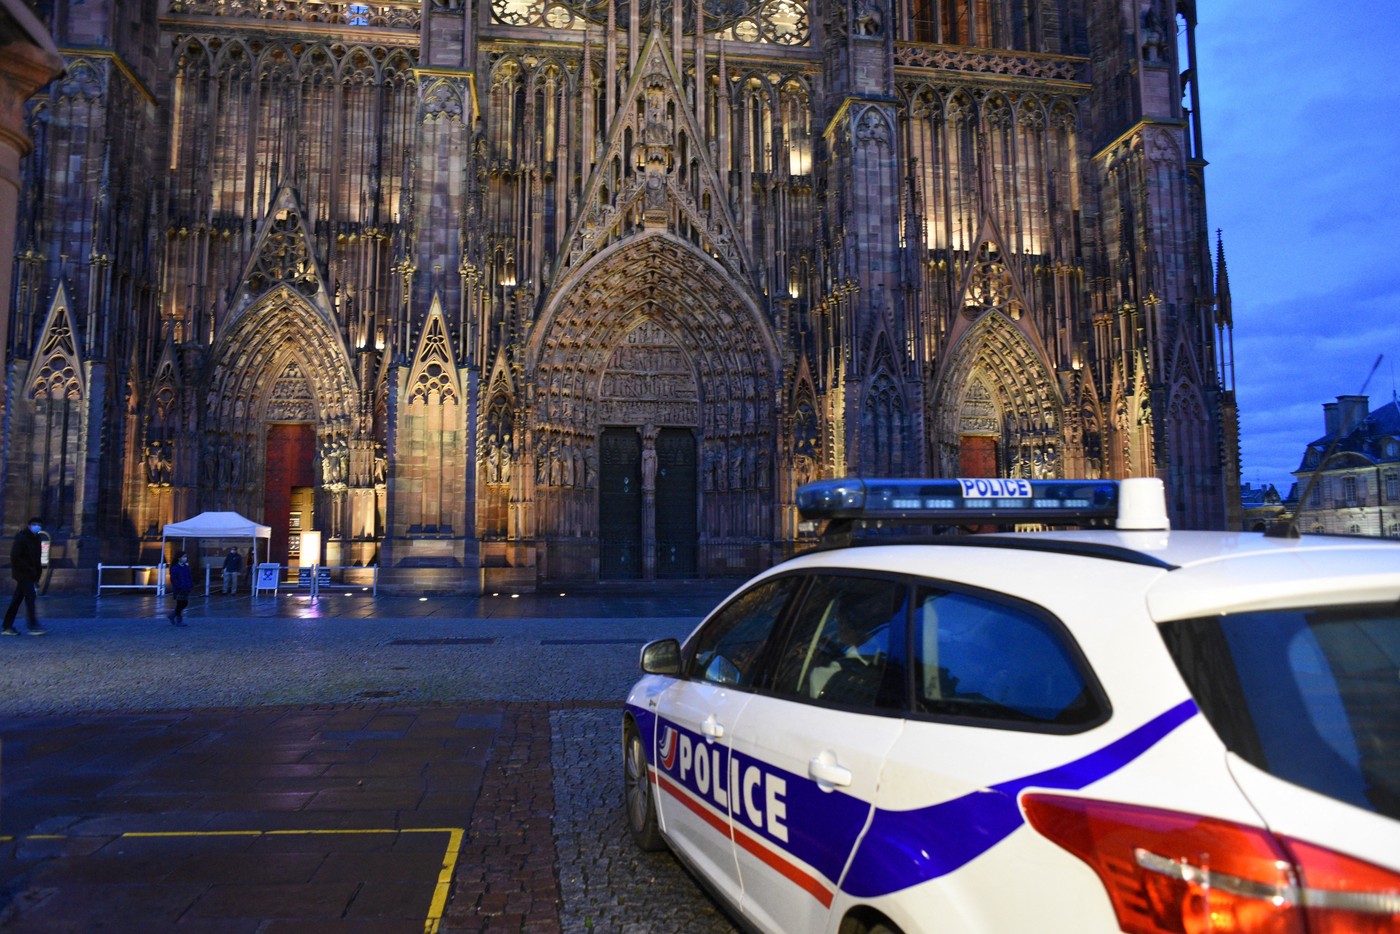 catedrala-din-strasbourg-evacuat-pentru-scurt-timp-n-urma-unei-false-alerte-cu-bomb